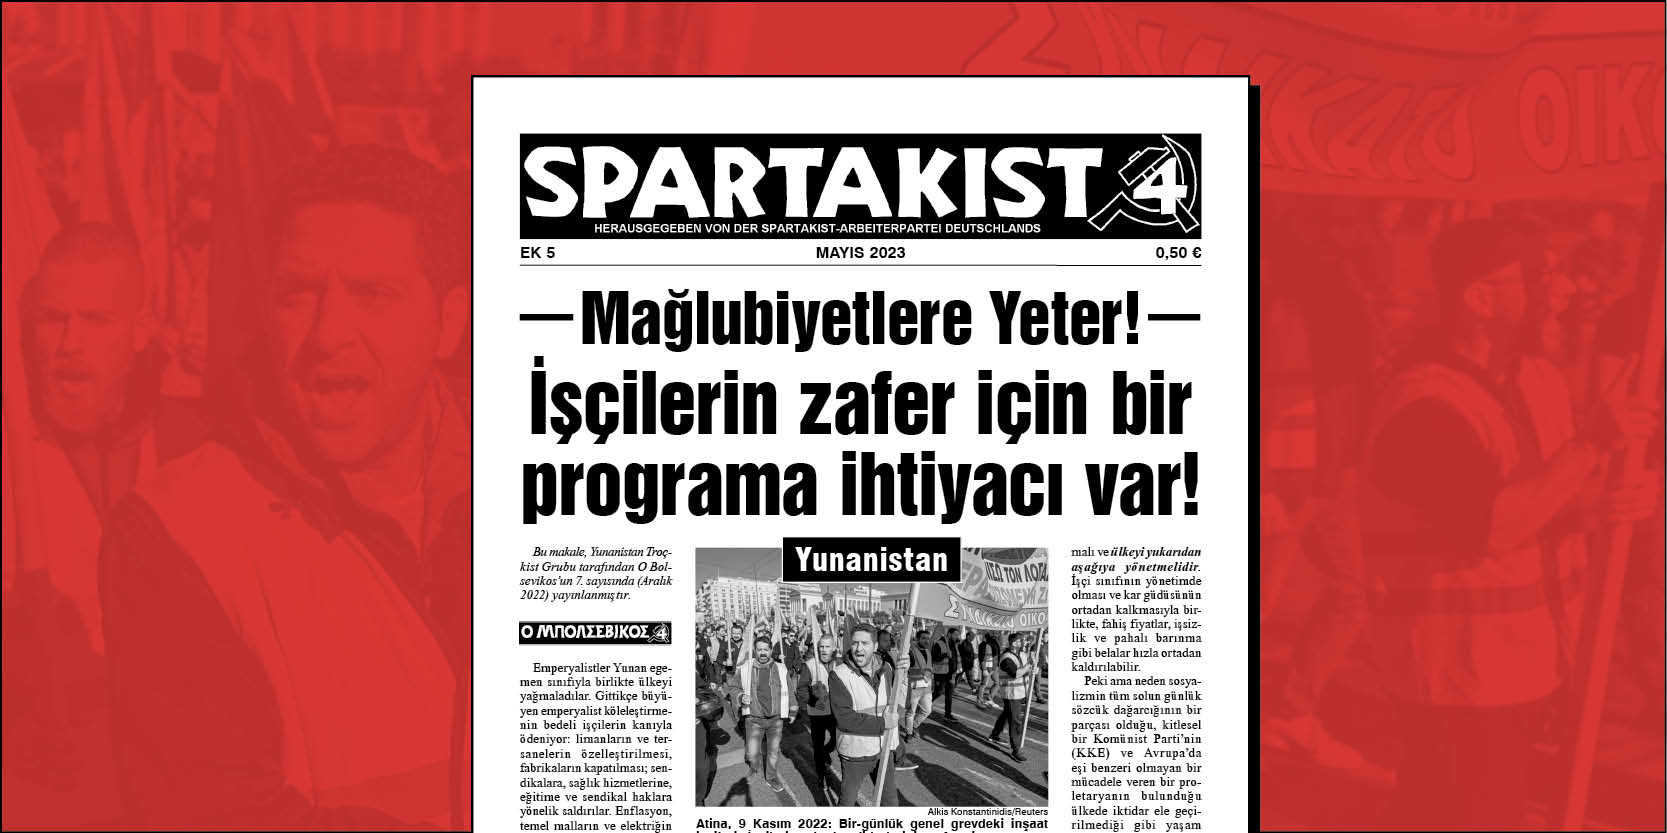 Spartakist (Türkçe Ek) No 5  |  1 Mayıs 2023